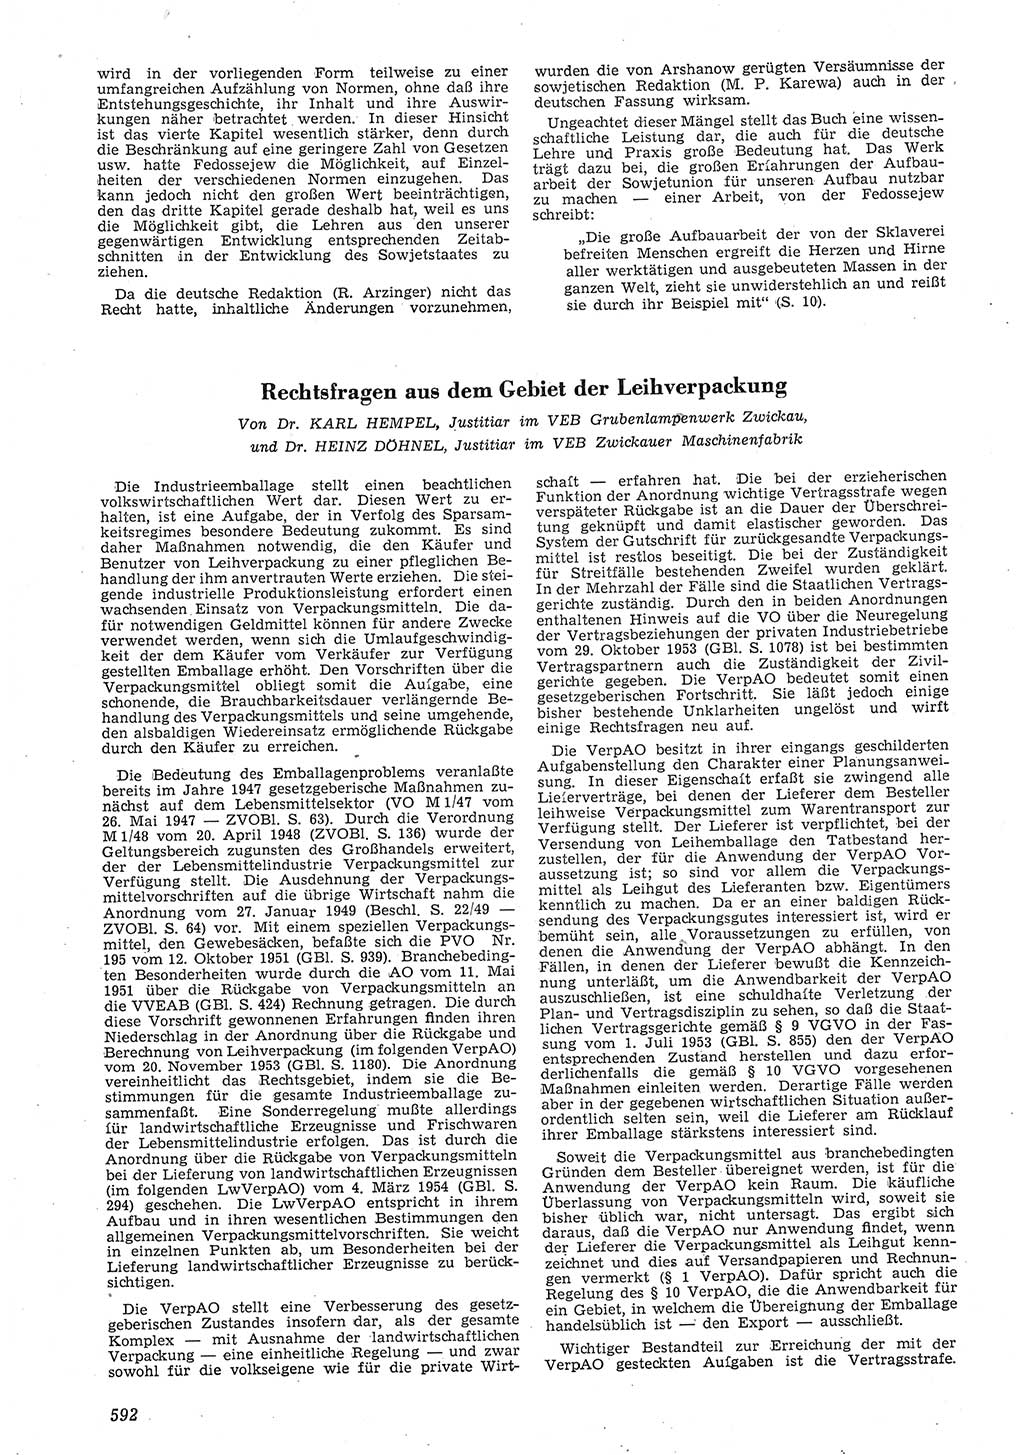 Neue Justiz (NJ), Zeitschrift für Recht und Rechtswissenschaft [Deutsche Demokratische Republik (DDR)], 8. Jahrgang 1954, Seite 592 (NJ DDR 1954, S. 592)